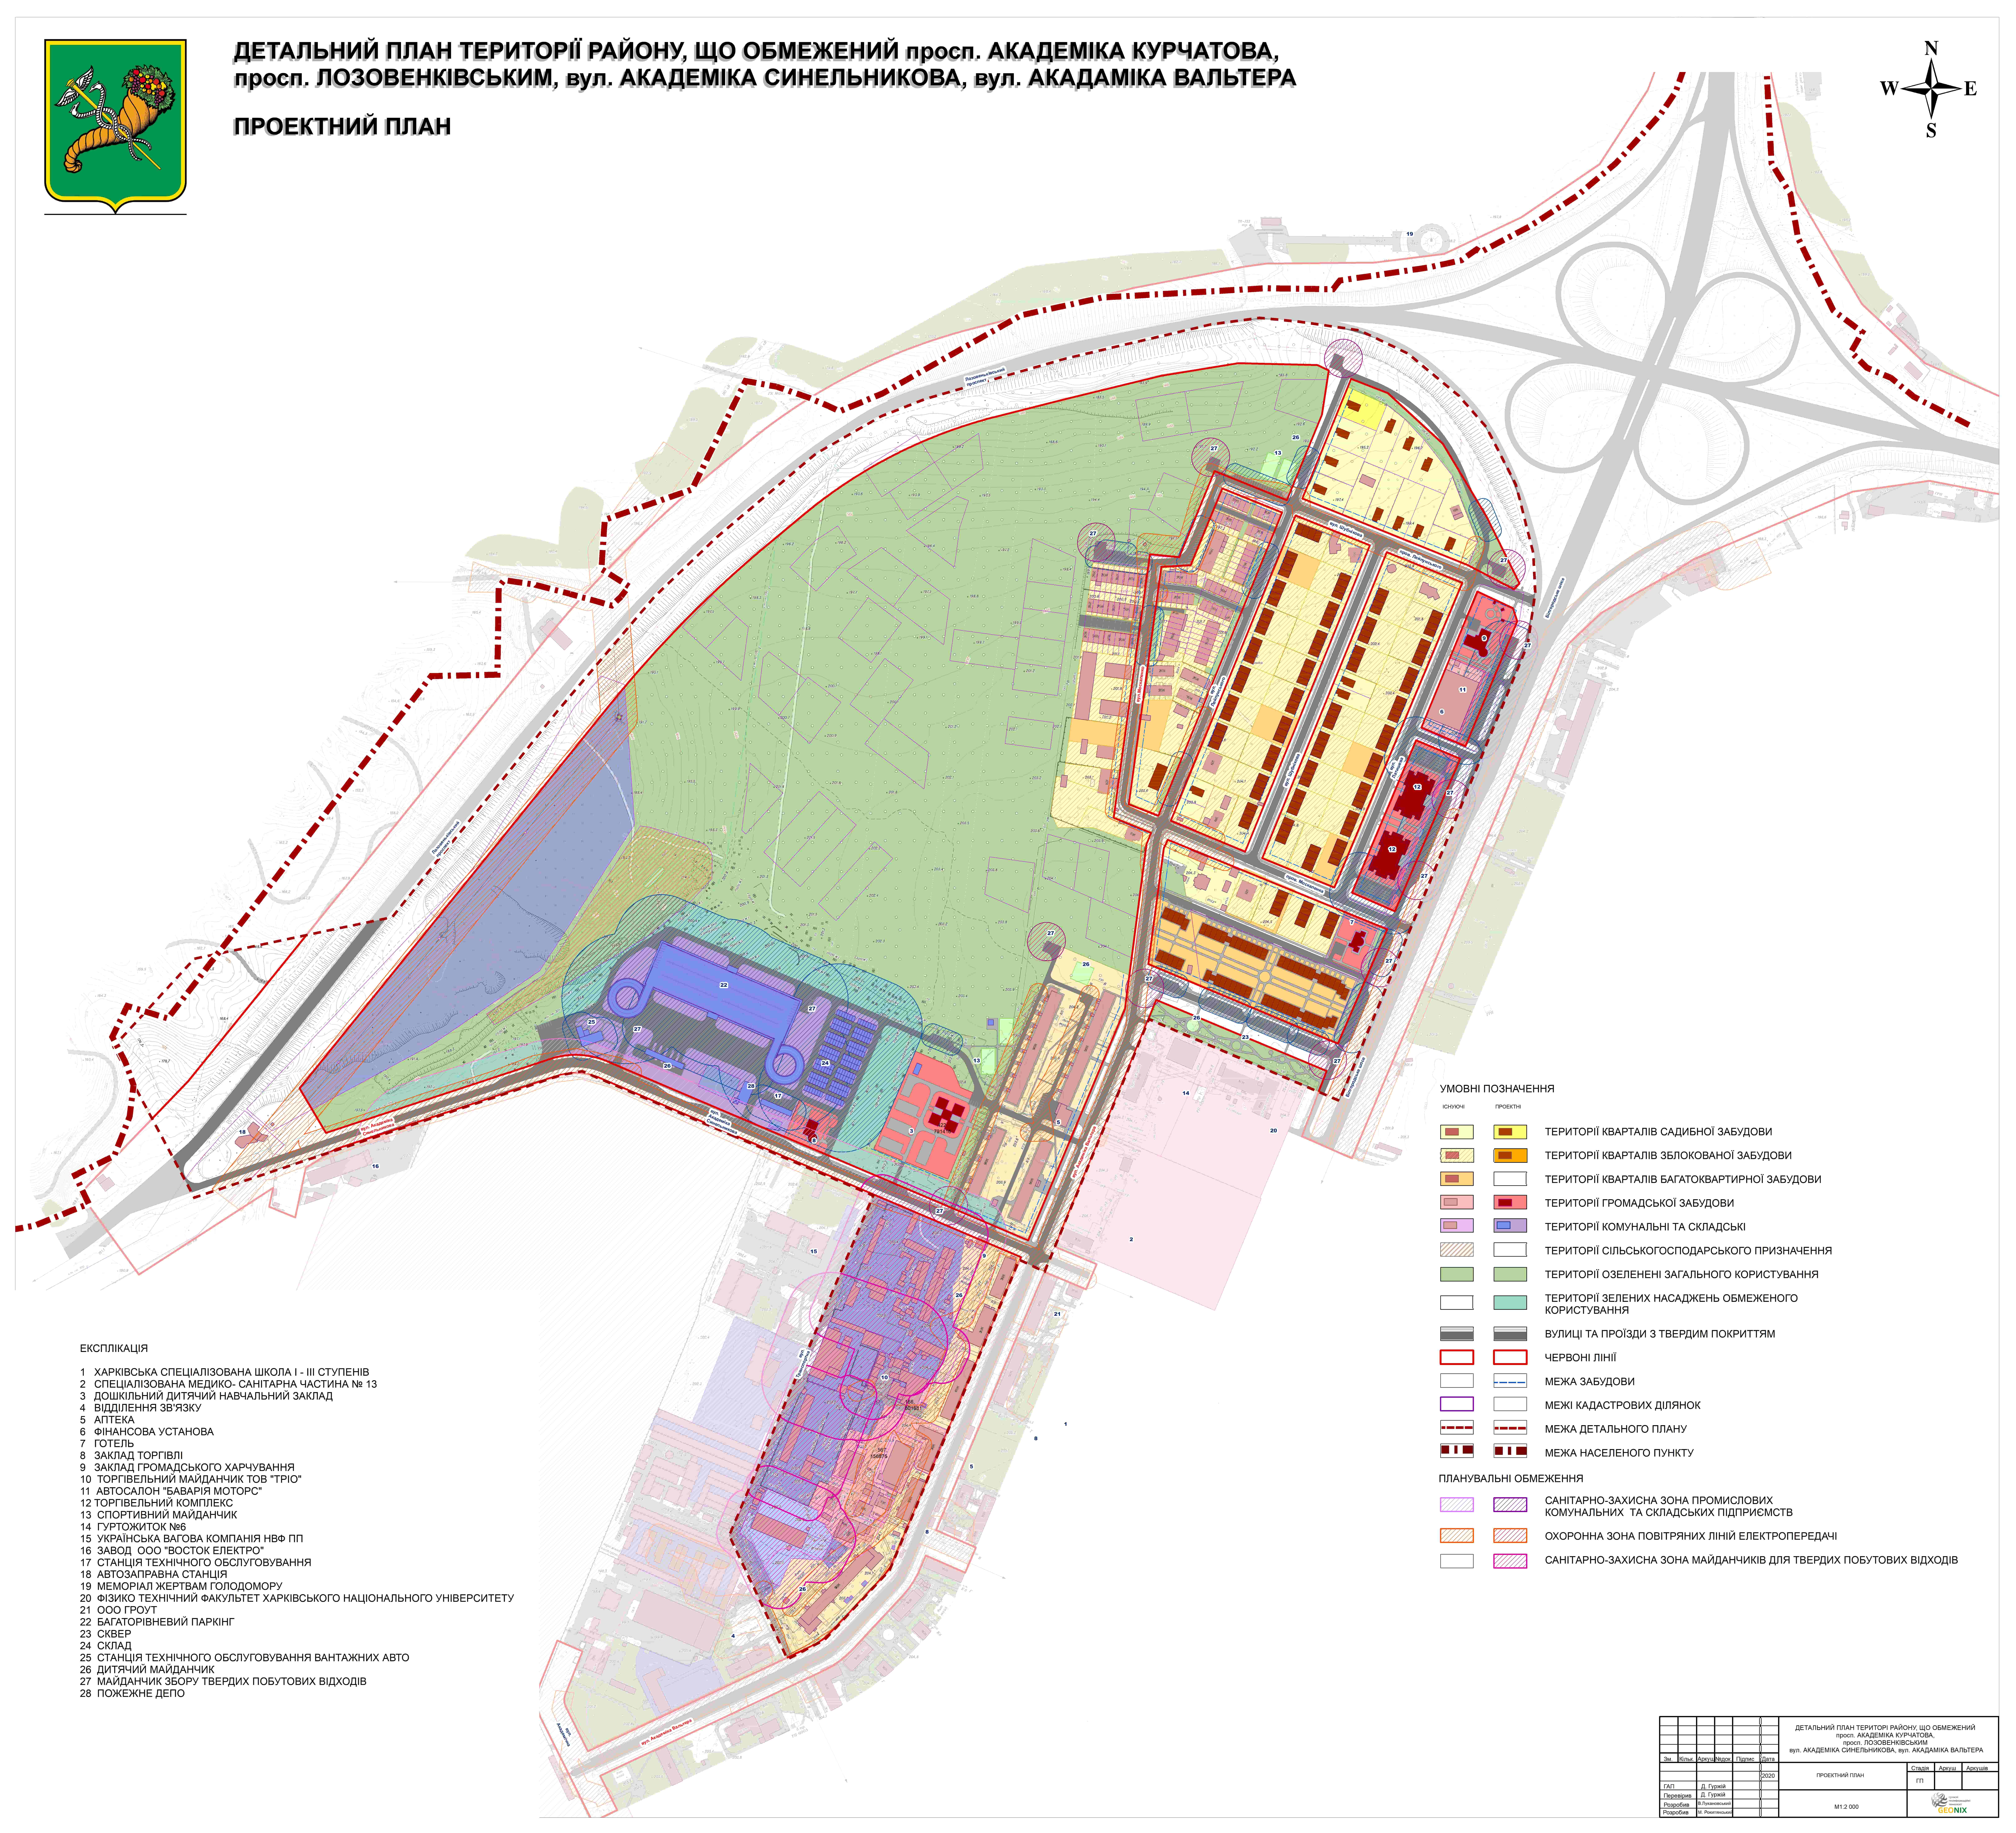 “ТОВ КОМПАНІЯ ГЕОНІКС” завершила розробку детального плану території частини міста Харків